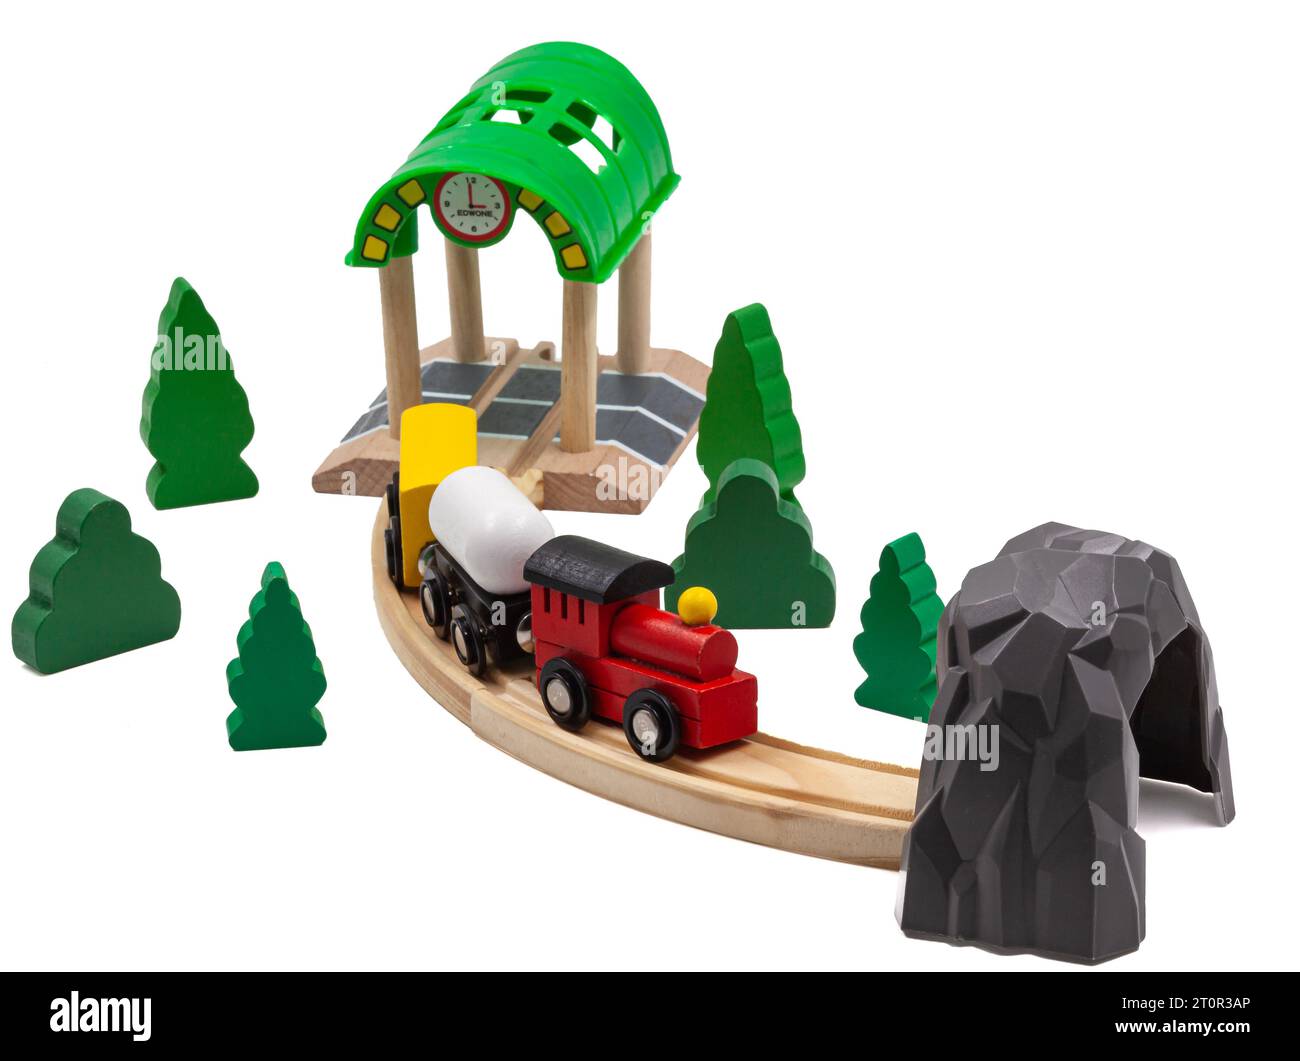 Train jouet pour enfants avec deux voitures sur un chemin de fer en bois. Arbres et arbres de Noël verts avec tunnel et station complètent le monde du jouet. Banque D'Images